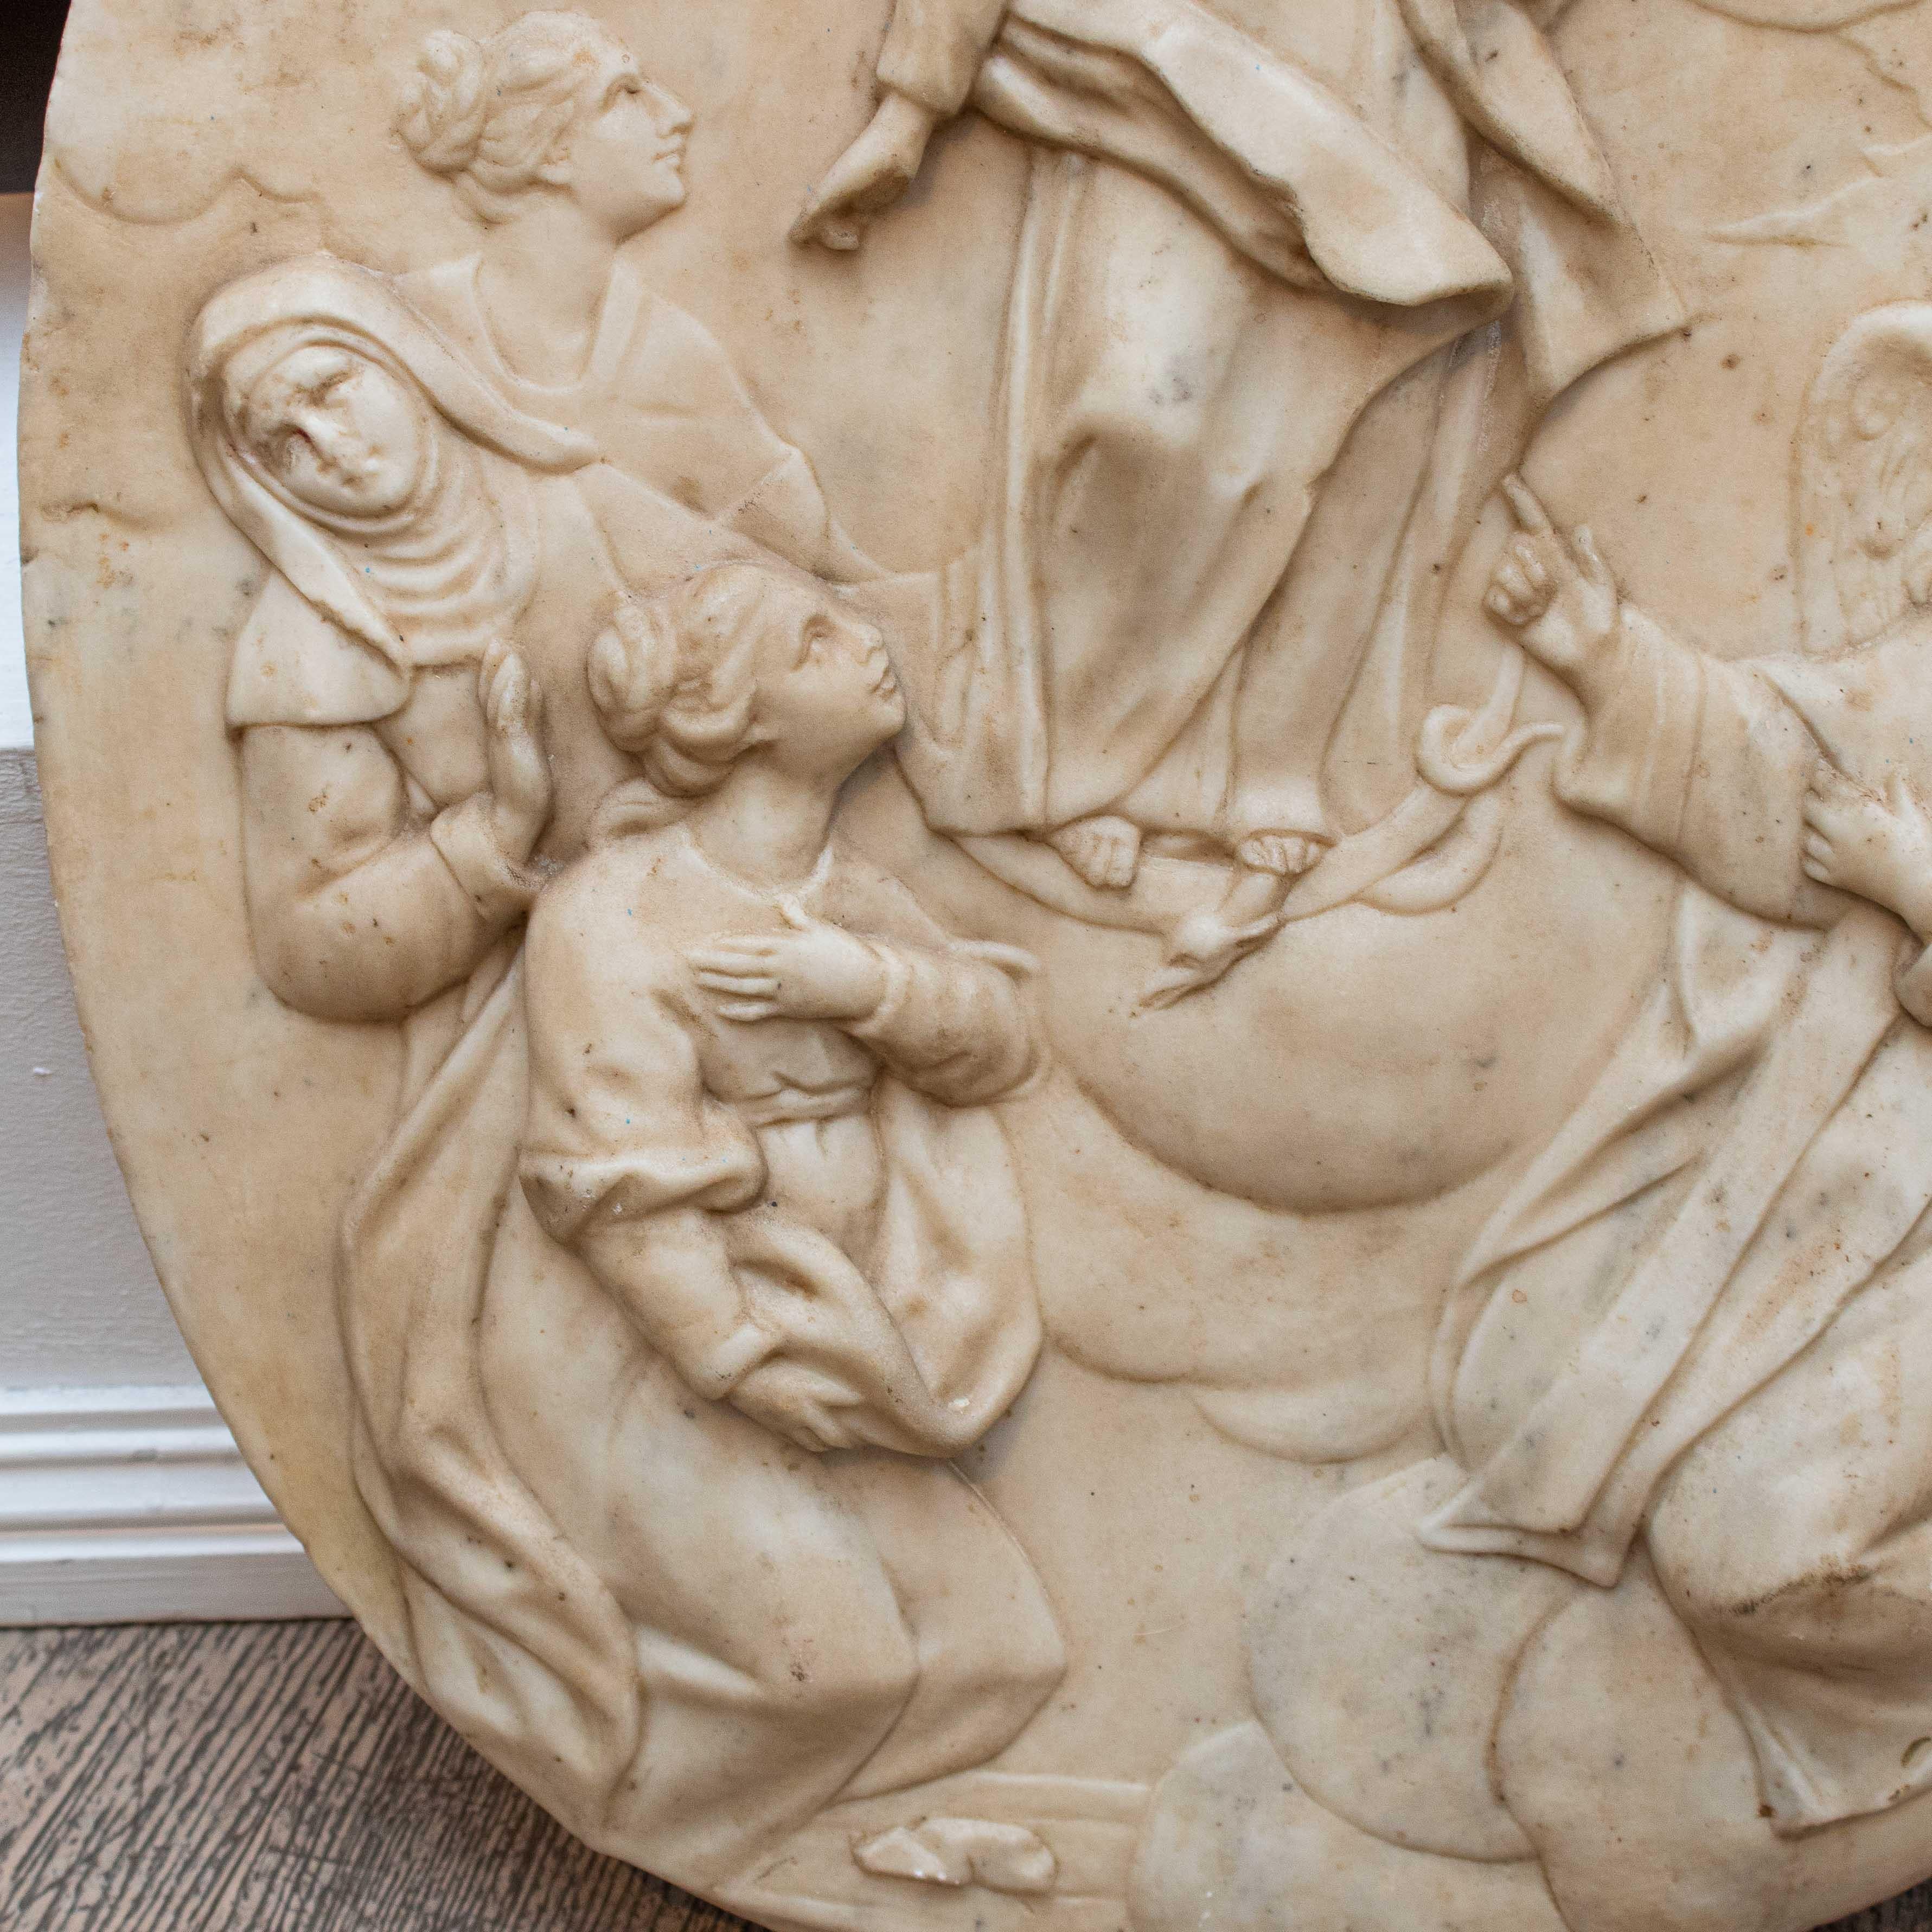 18ème siècle
Immaculée Conception et saints
Marbre, 60 x 50 x 9 cm

Au centre de l'ovale de marbre se trouve une Immaculée Conception accompagnée de saint Vincent FERRER (identifiable grâce à la présence des ailes et à l'habit dominicain), et de